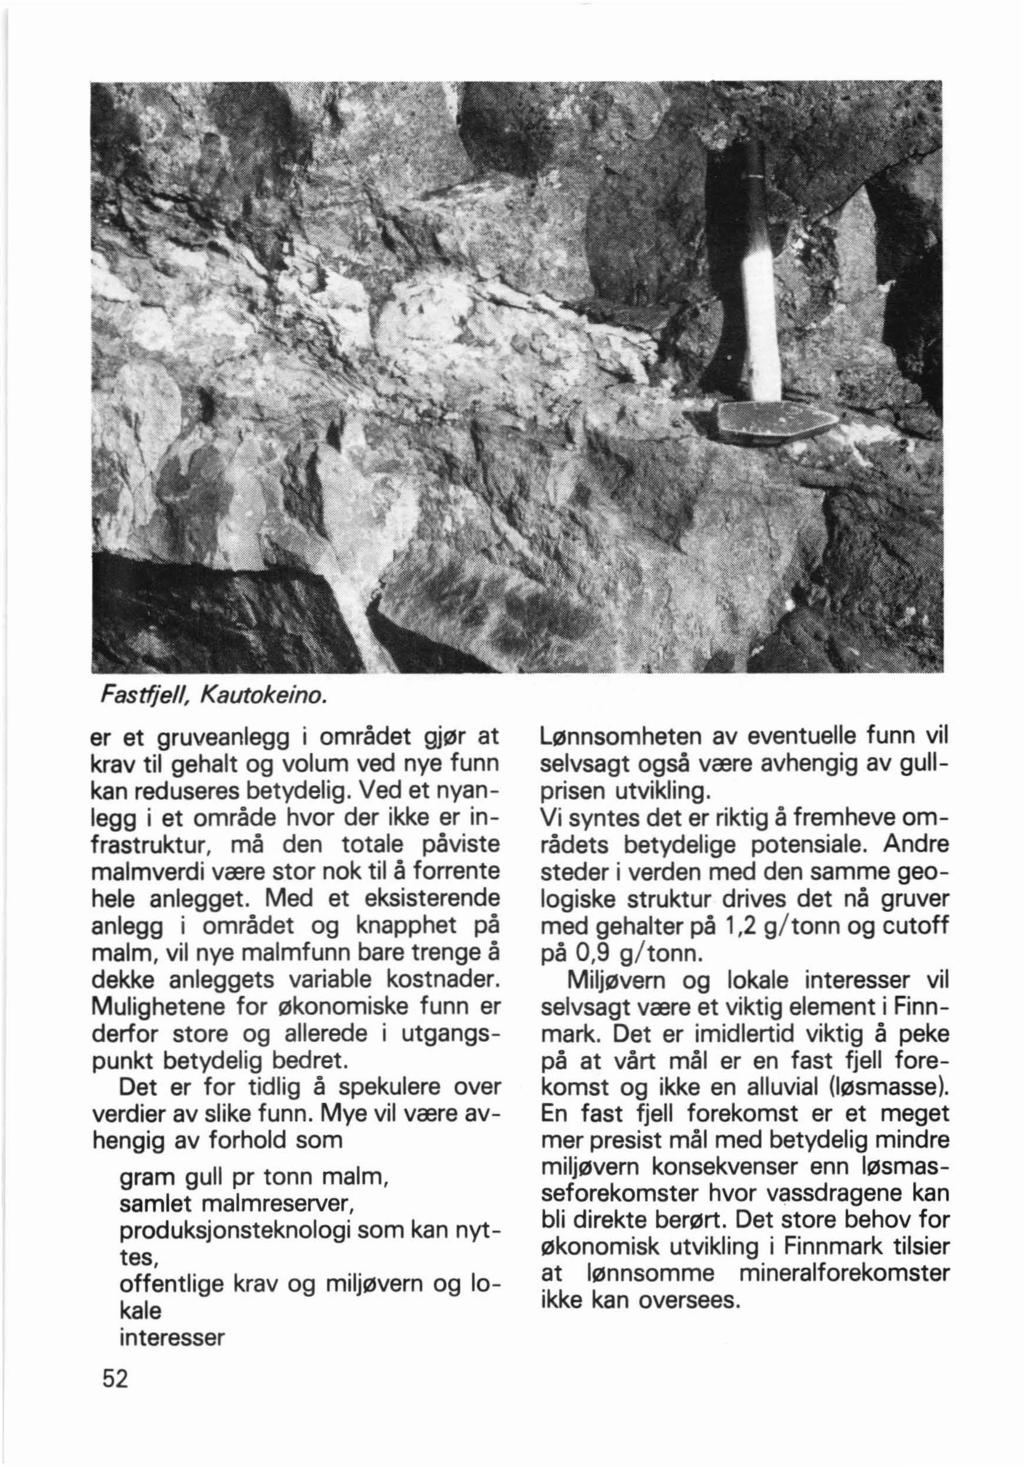 Fastfjell, Kautokeino. er et gruveanlegg i ornradet gjl2lr at krav til gehalt og volum ved nye funn kan reduseres bet ydelig.